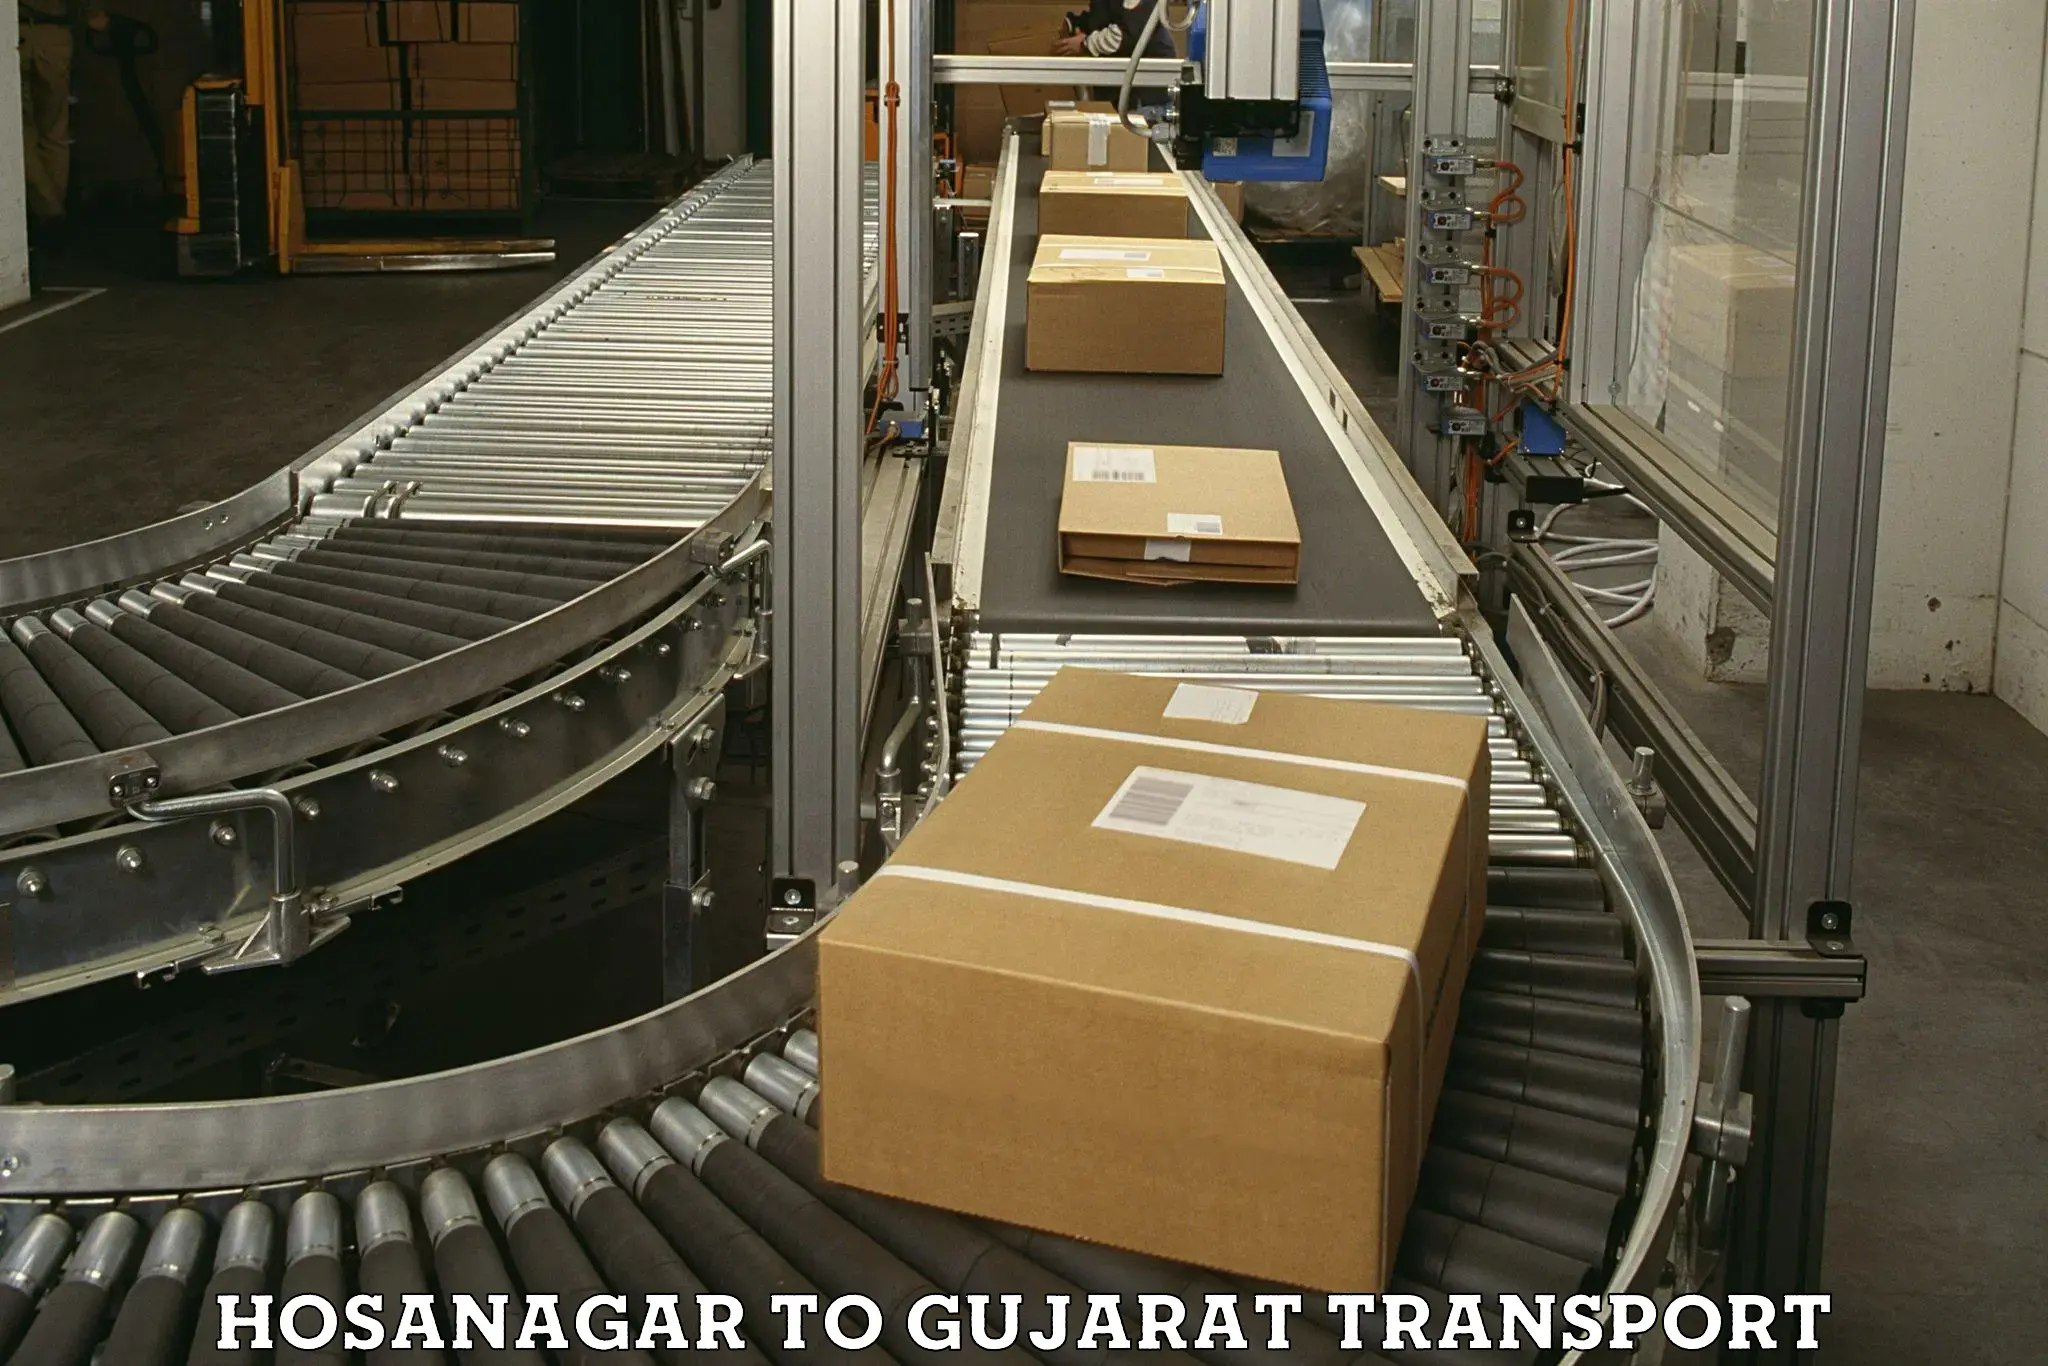 Daily transport service Hosanagar to Godhra